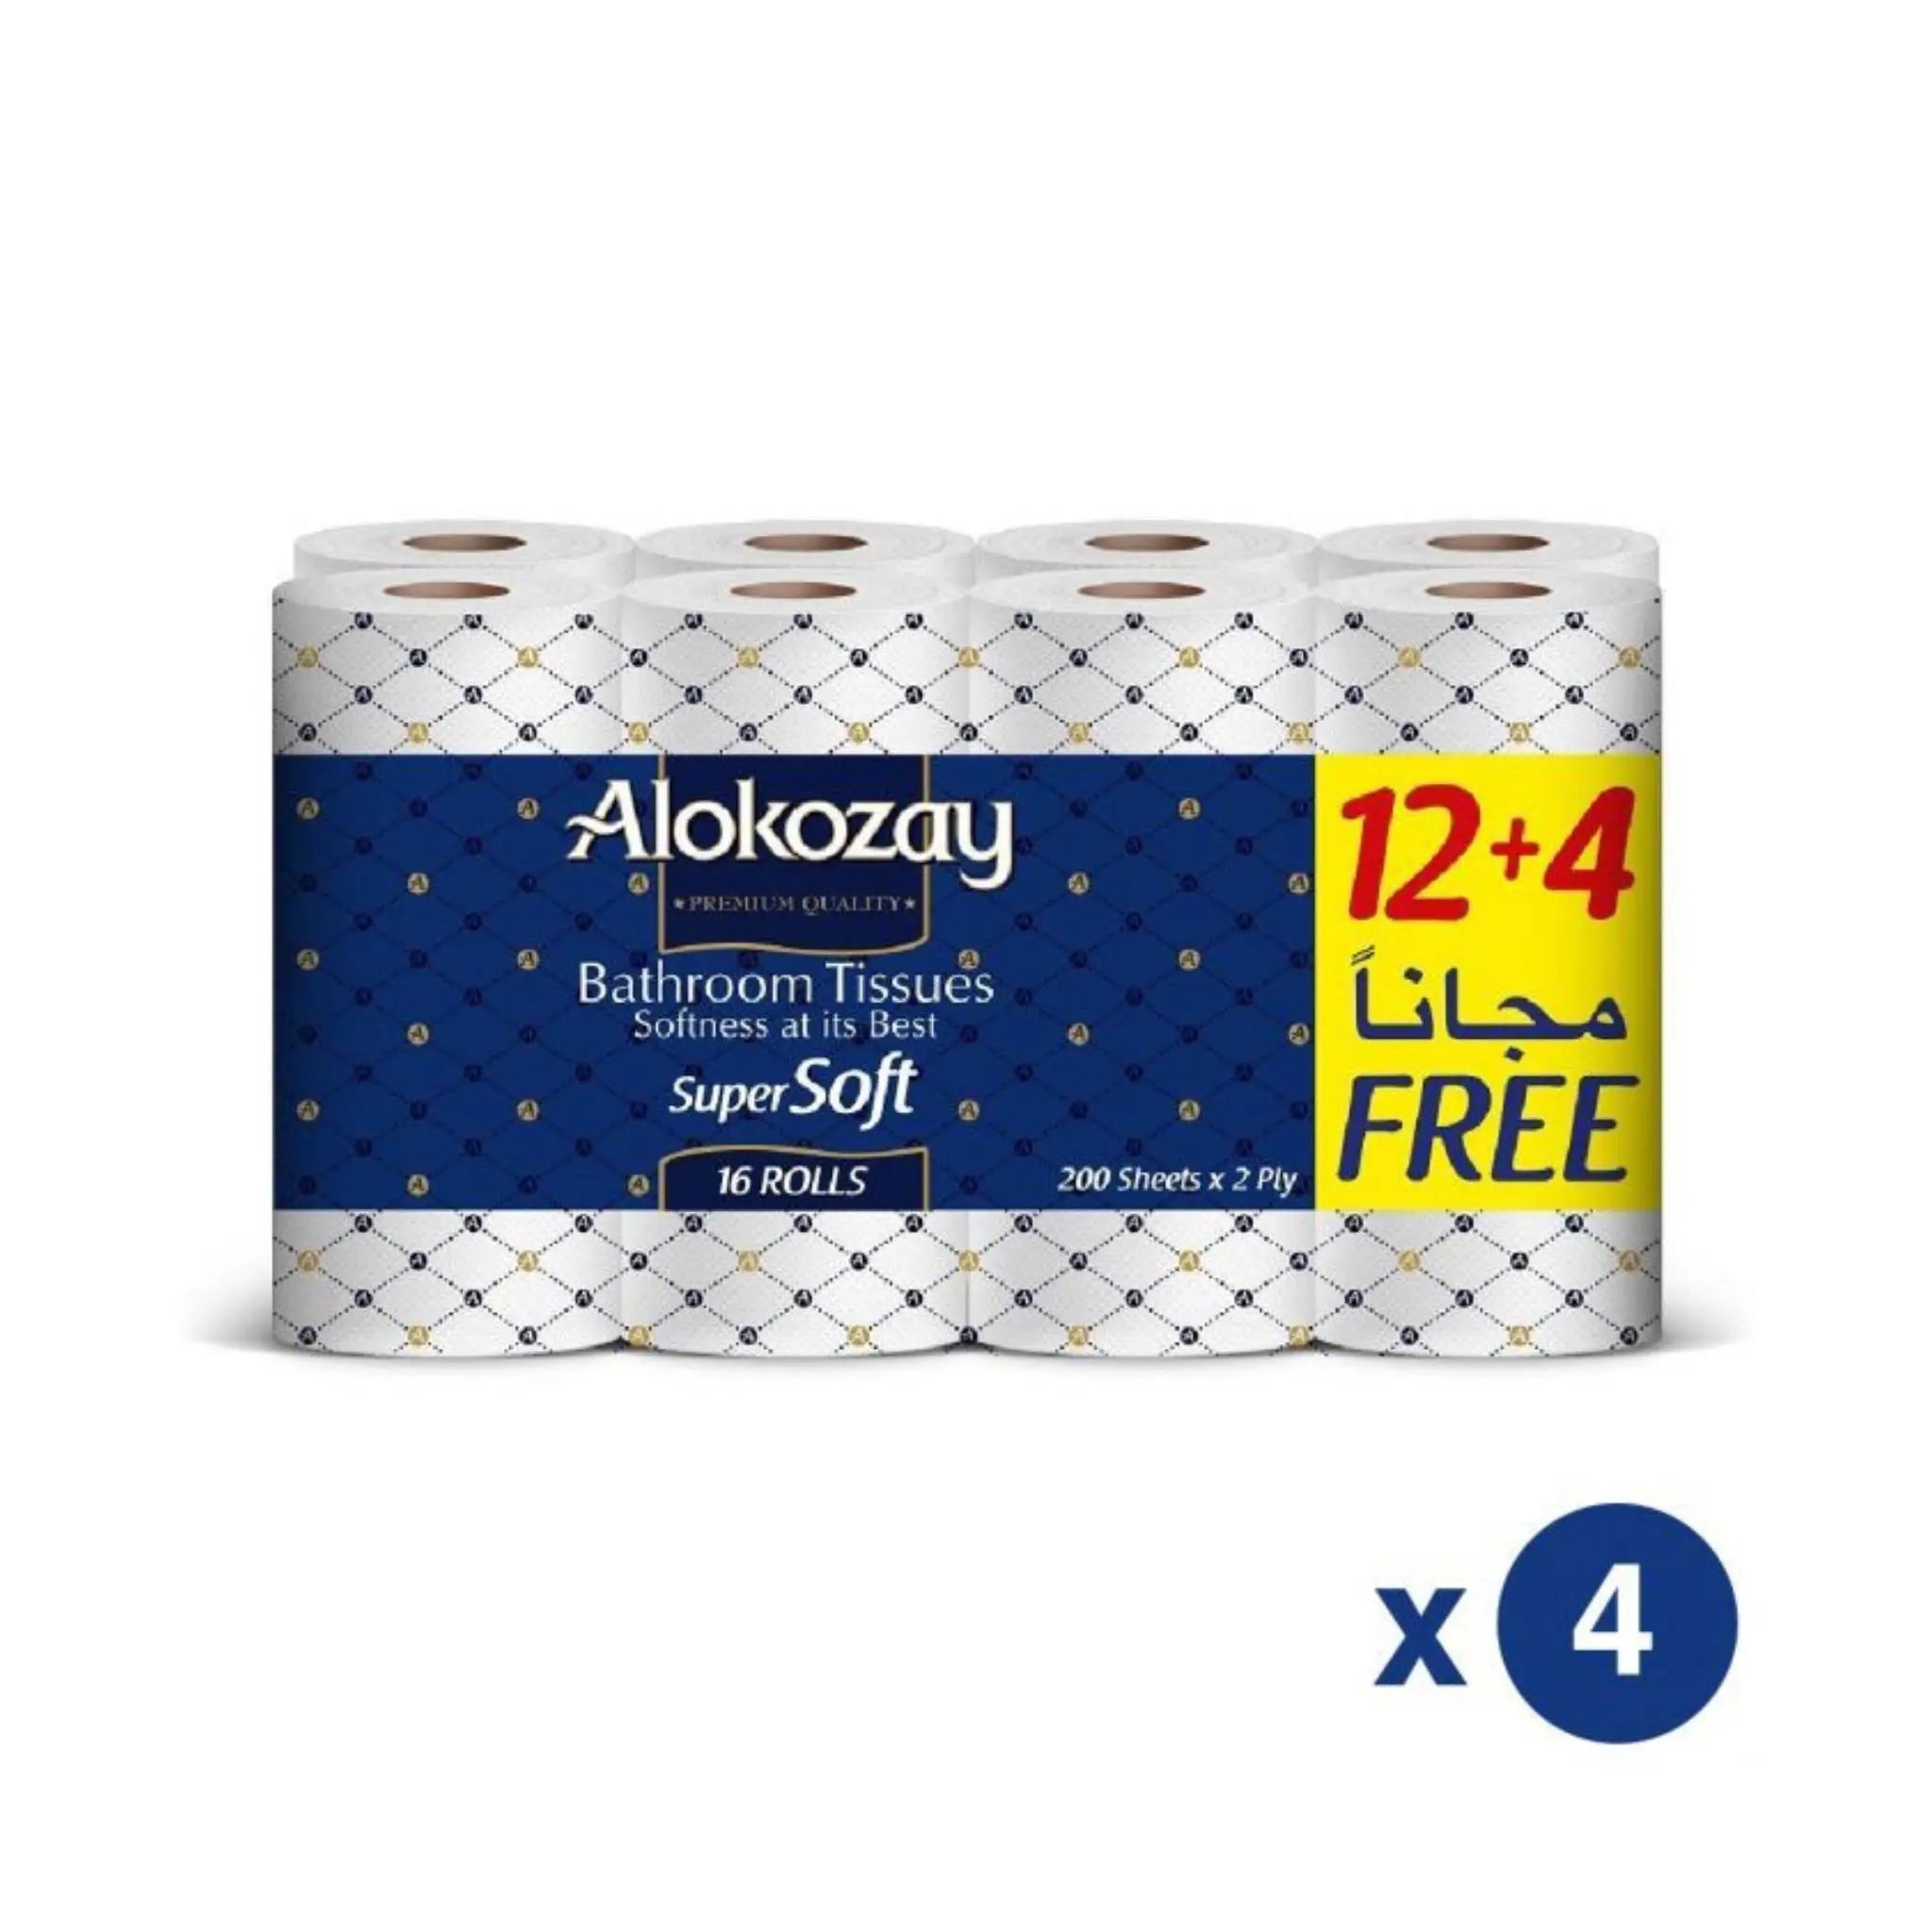 Alokozay Super Soft Bathroom Tissue - (12 + 4 Rolls x 2 ply x 200 Sheets) 4 packs per carton Marino.AE